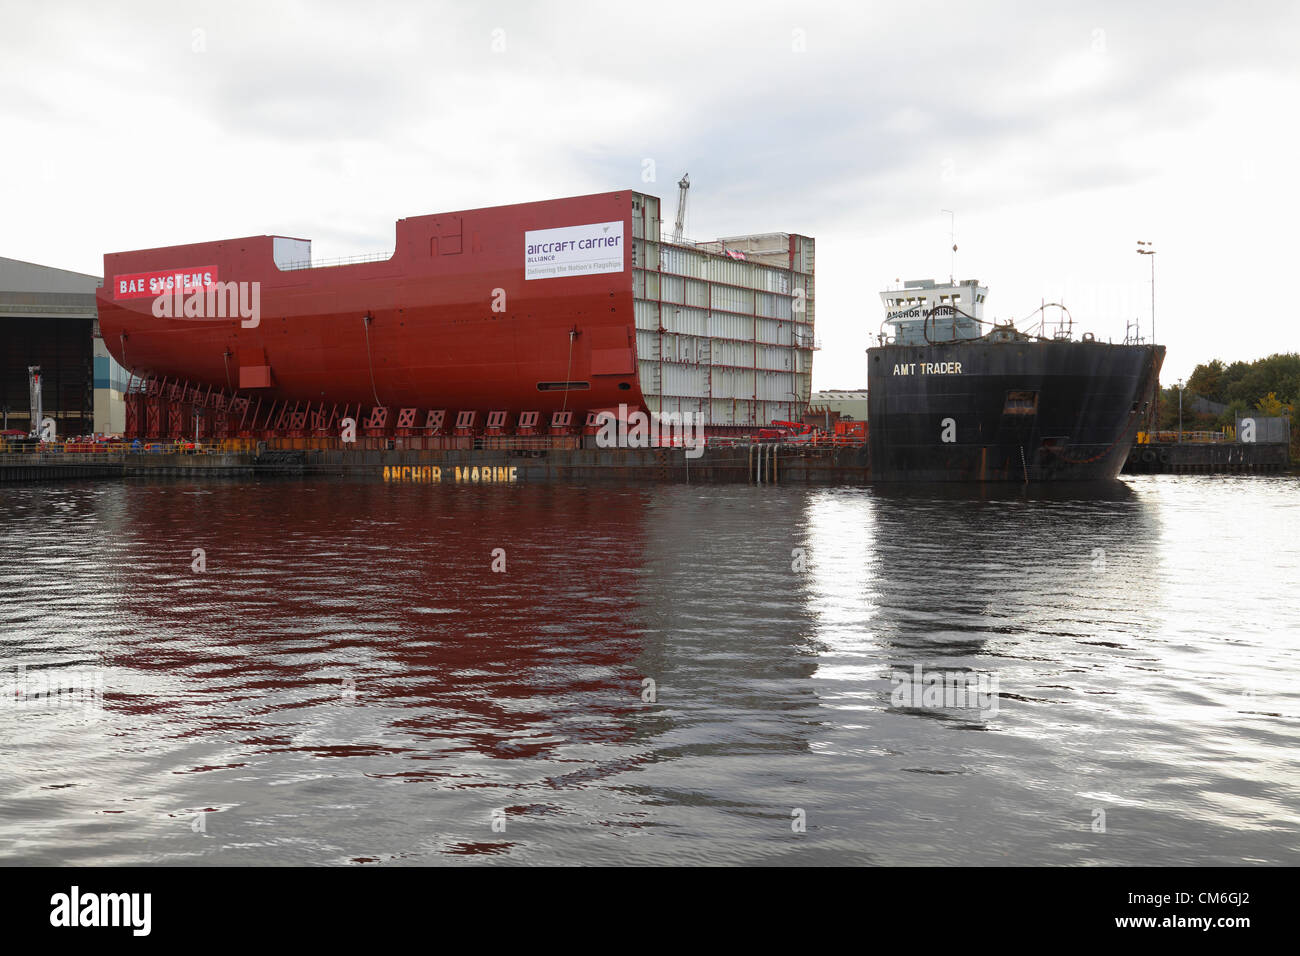 BAE Systems Shipyard, Govan, Glasgow, martedì 16 ottobre 2012. Una sezione completa dello scafo della portaerei HMS Queen Elizabeth caricato sulla chiatta AMT Trader sul fiume Clyde Foto Stock